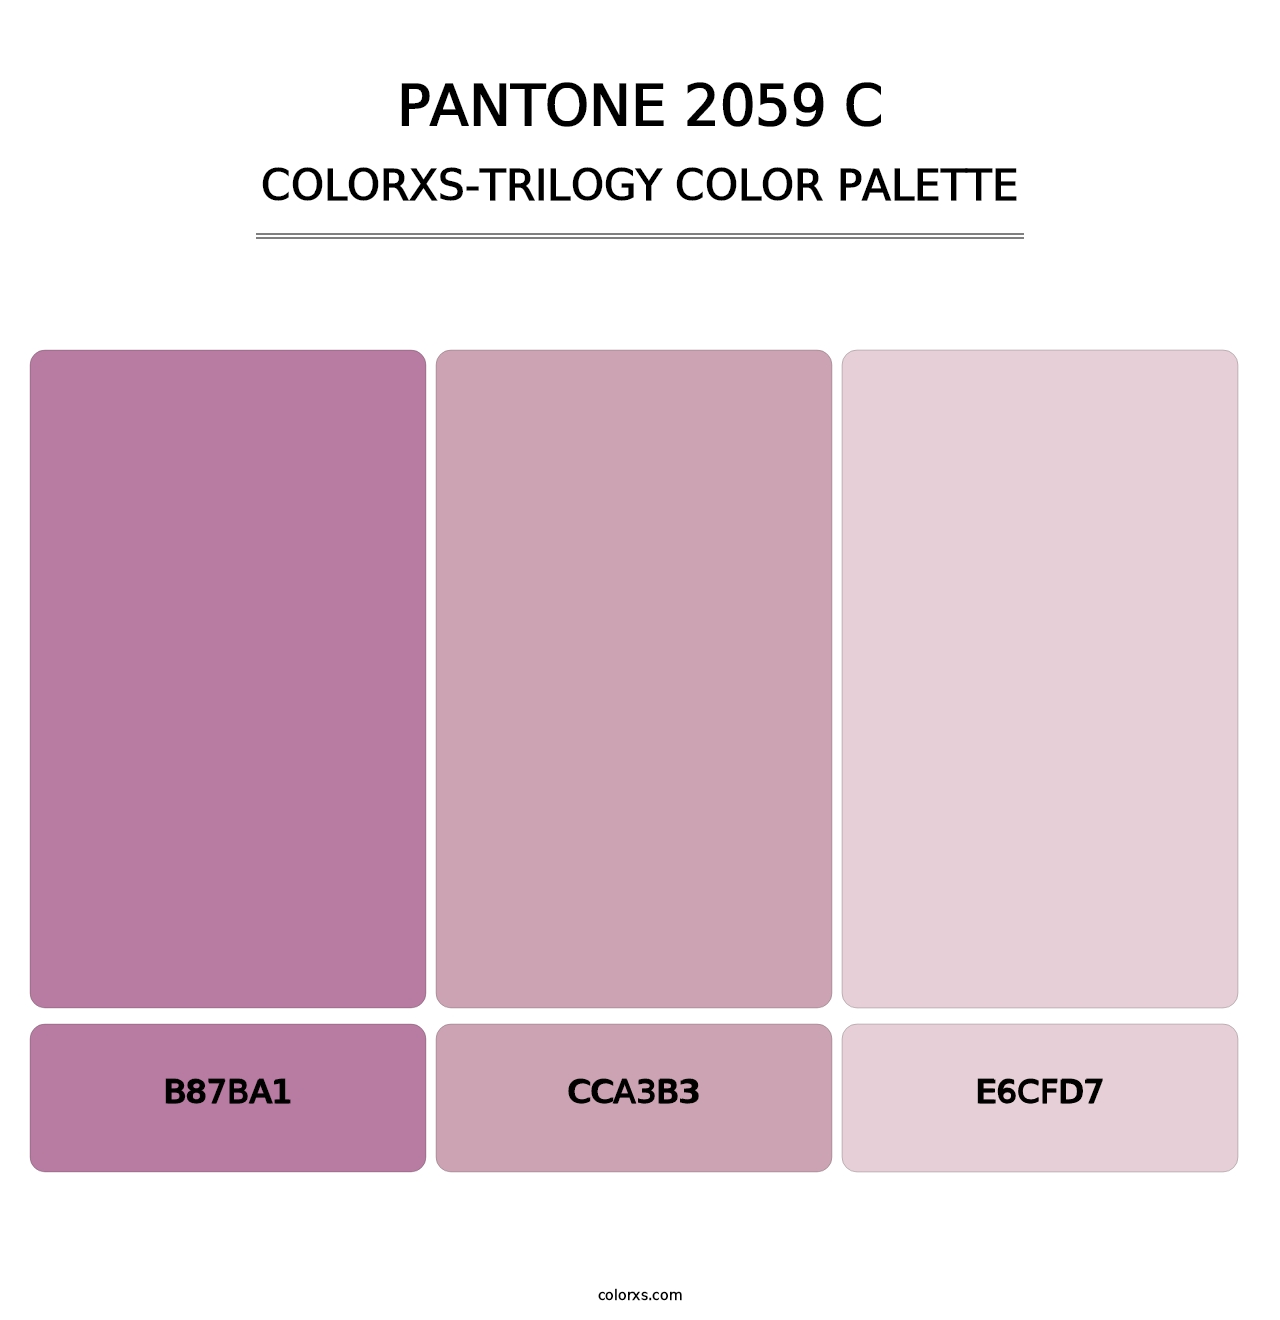 PANTONE 2059 C - Colorxs Trilogy Palette